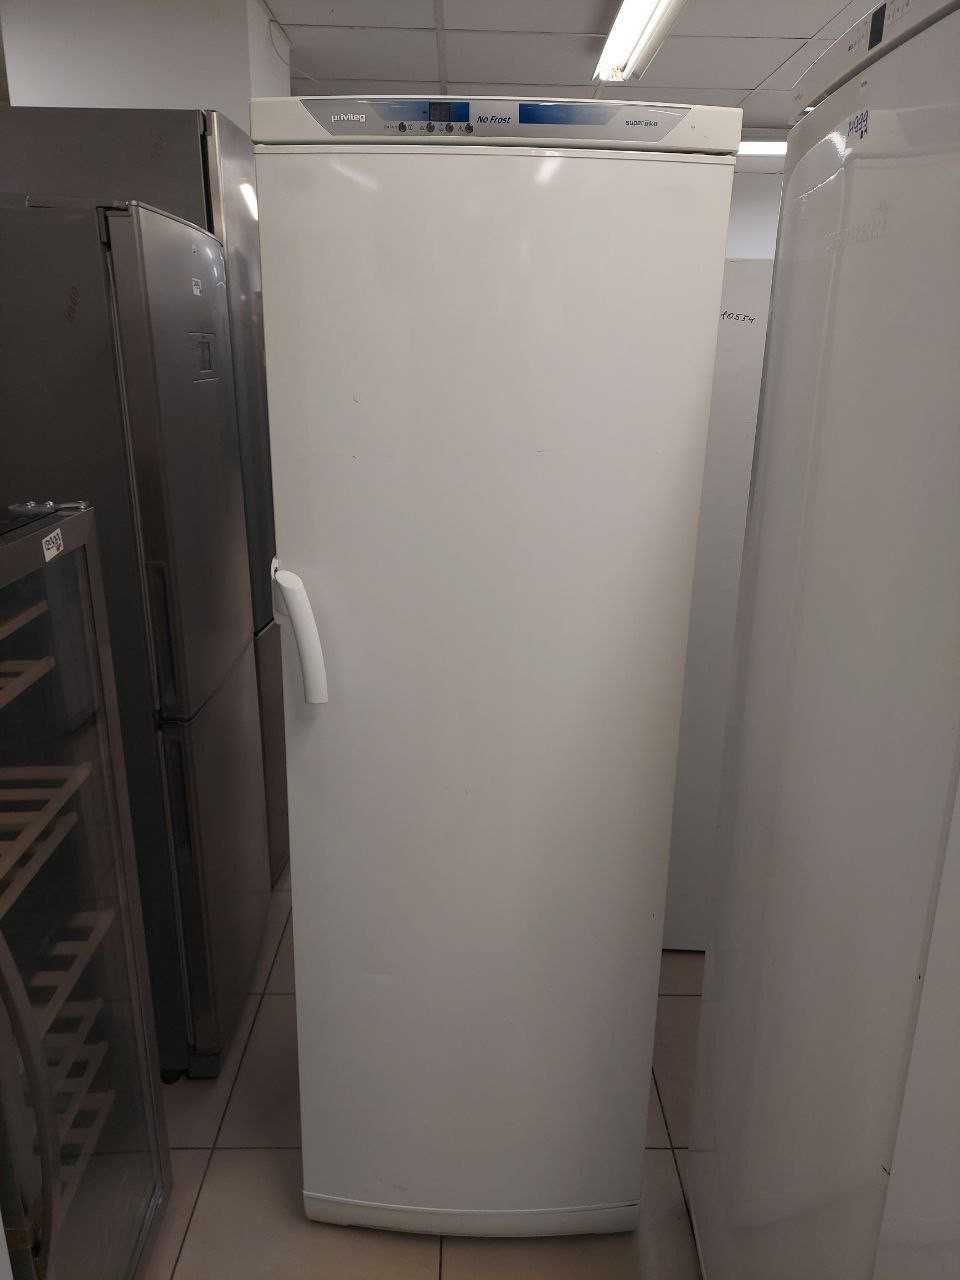 Холодильник Siemens KI86VNSF0 під вбудову,б/у 
Під відбудову 
СТОК